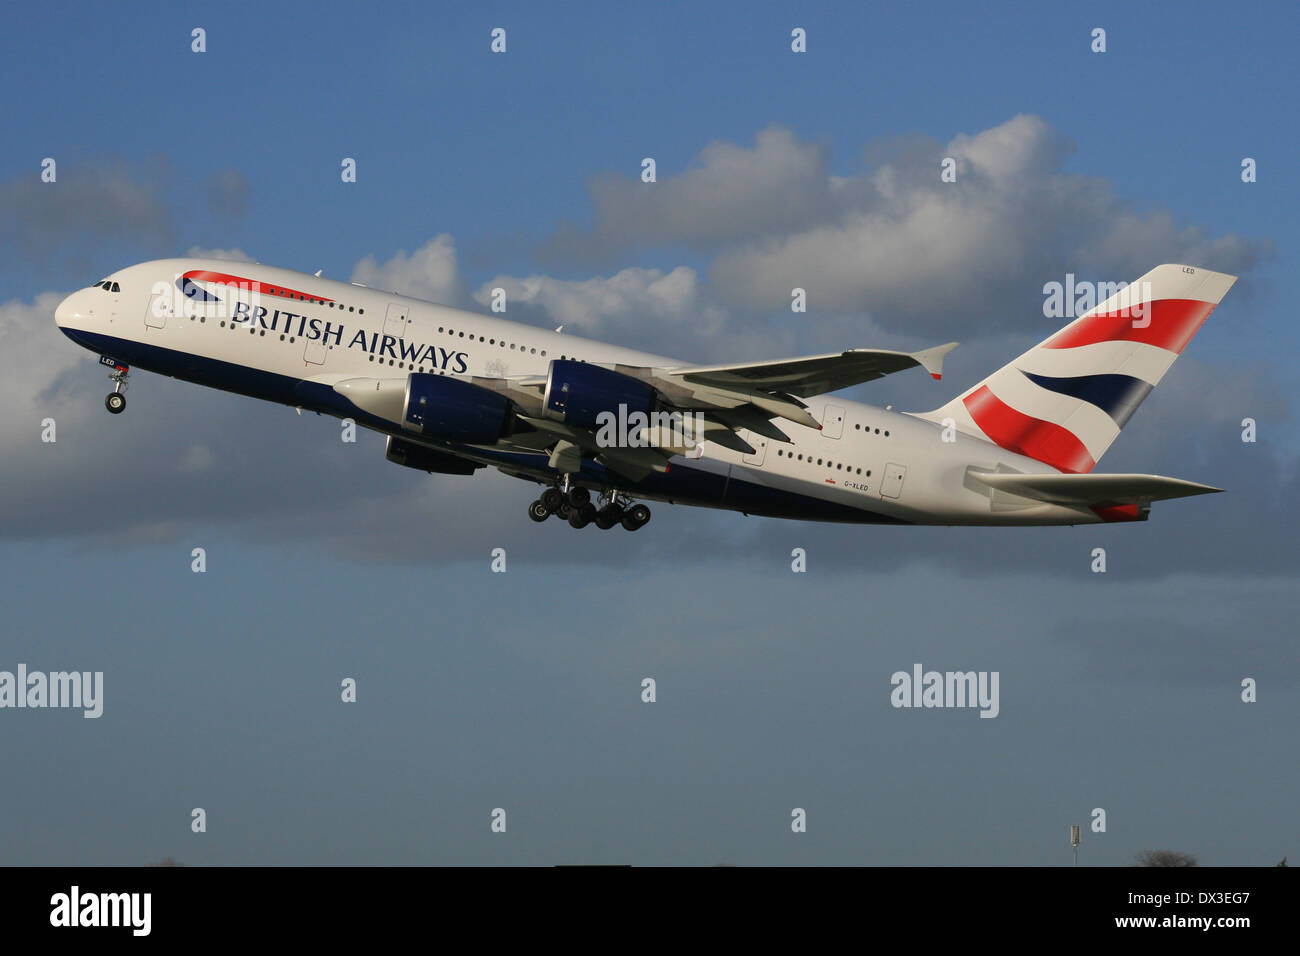 British Airways A380 Wallpaper